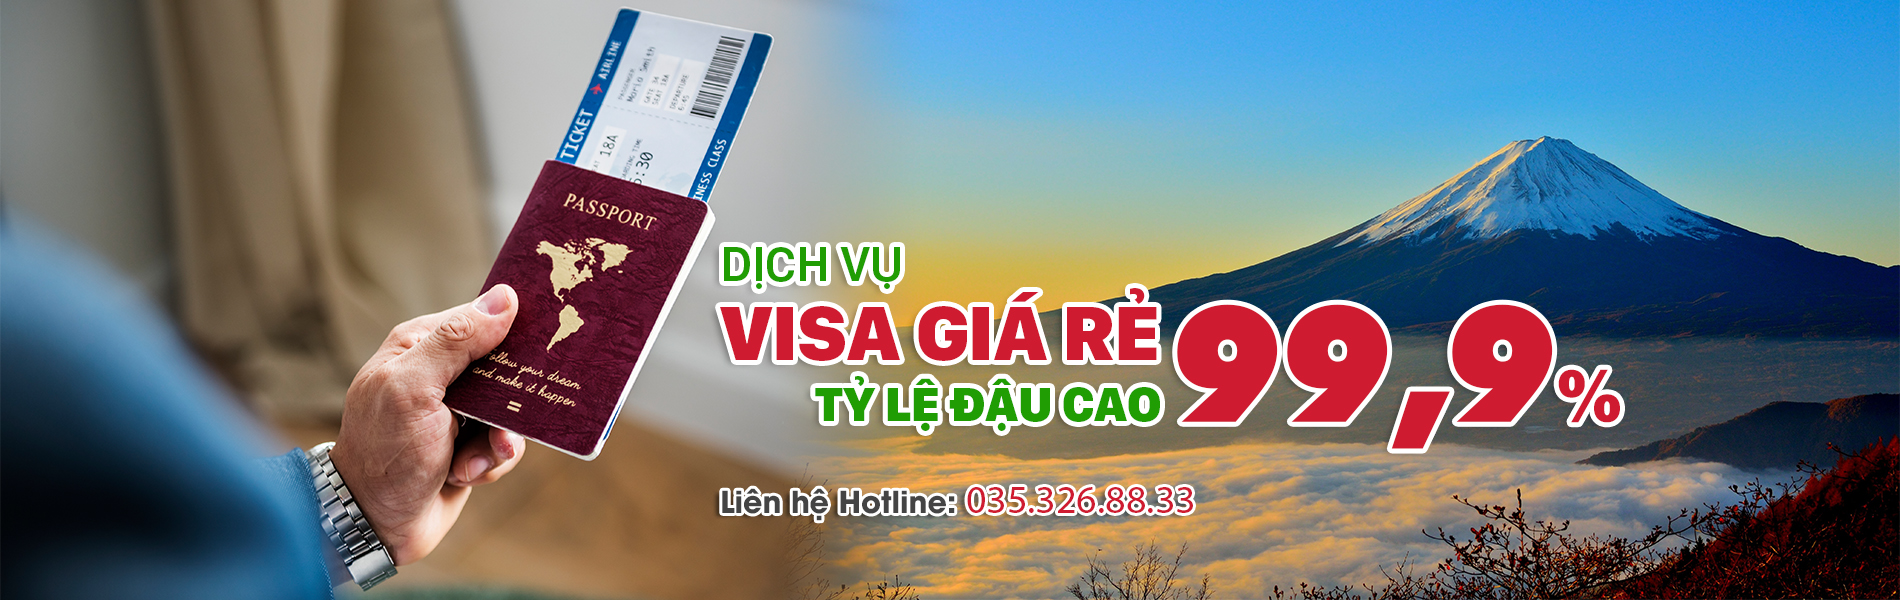 slide_Visa_so5